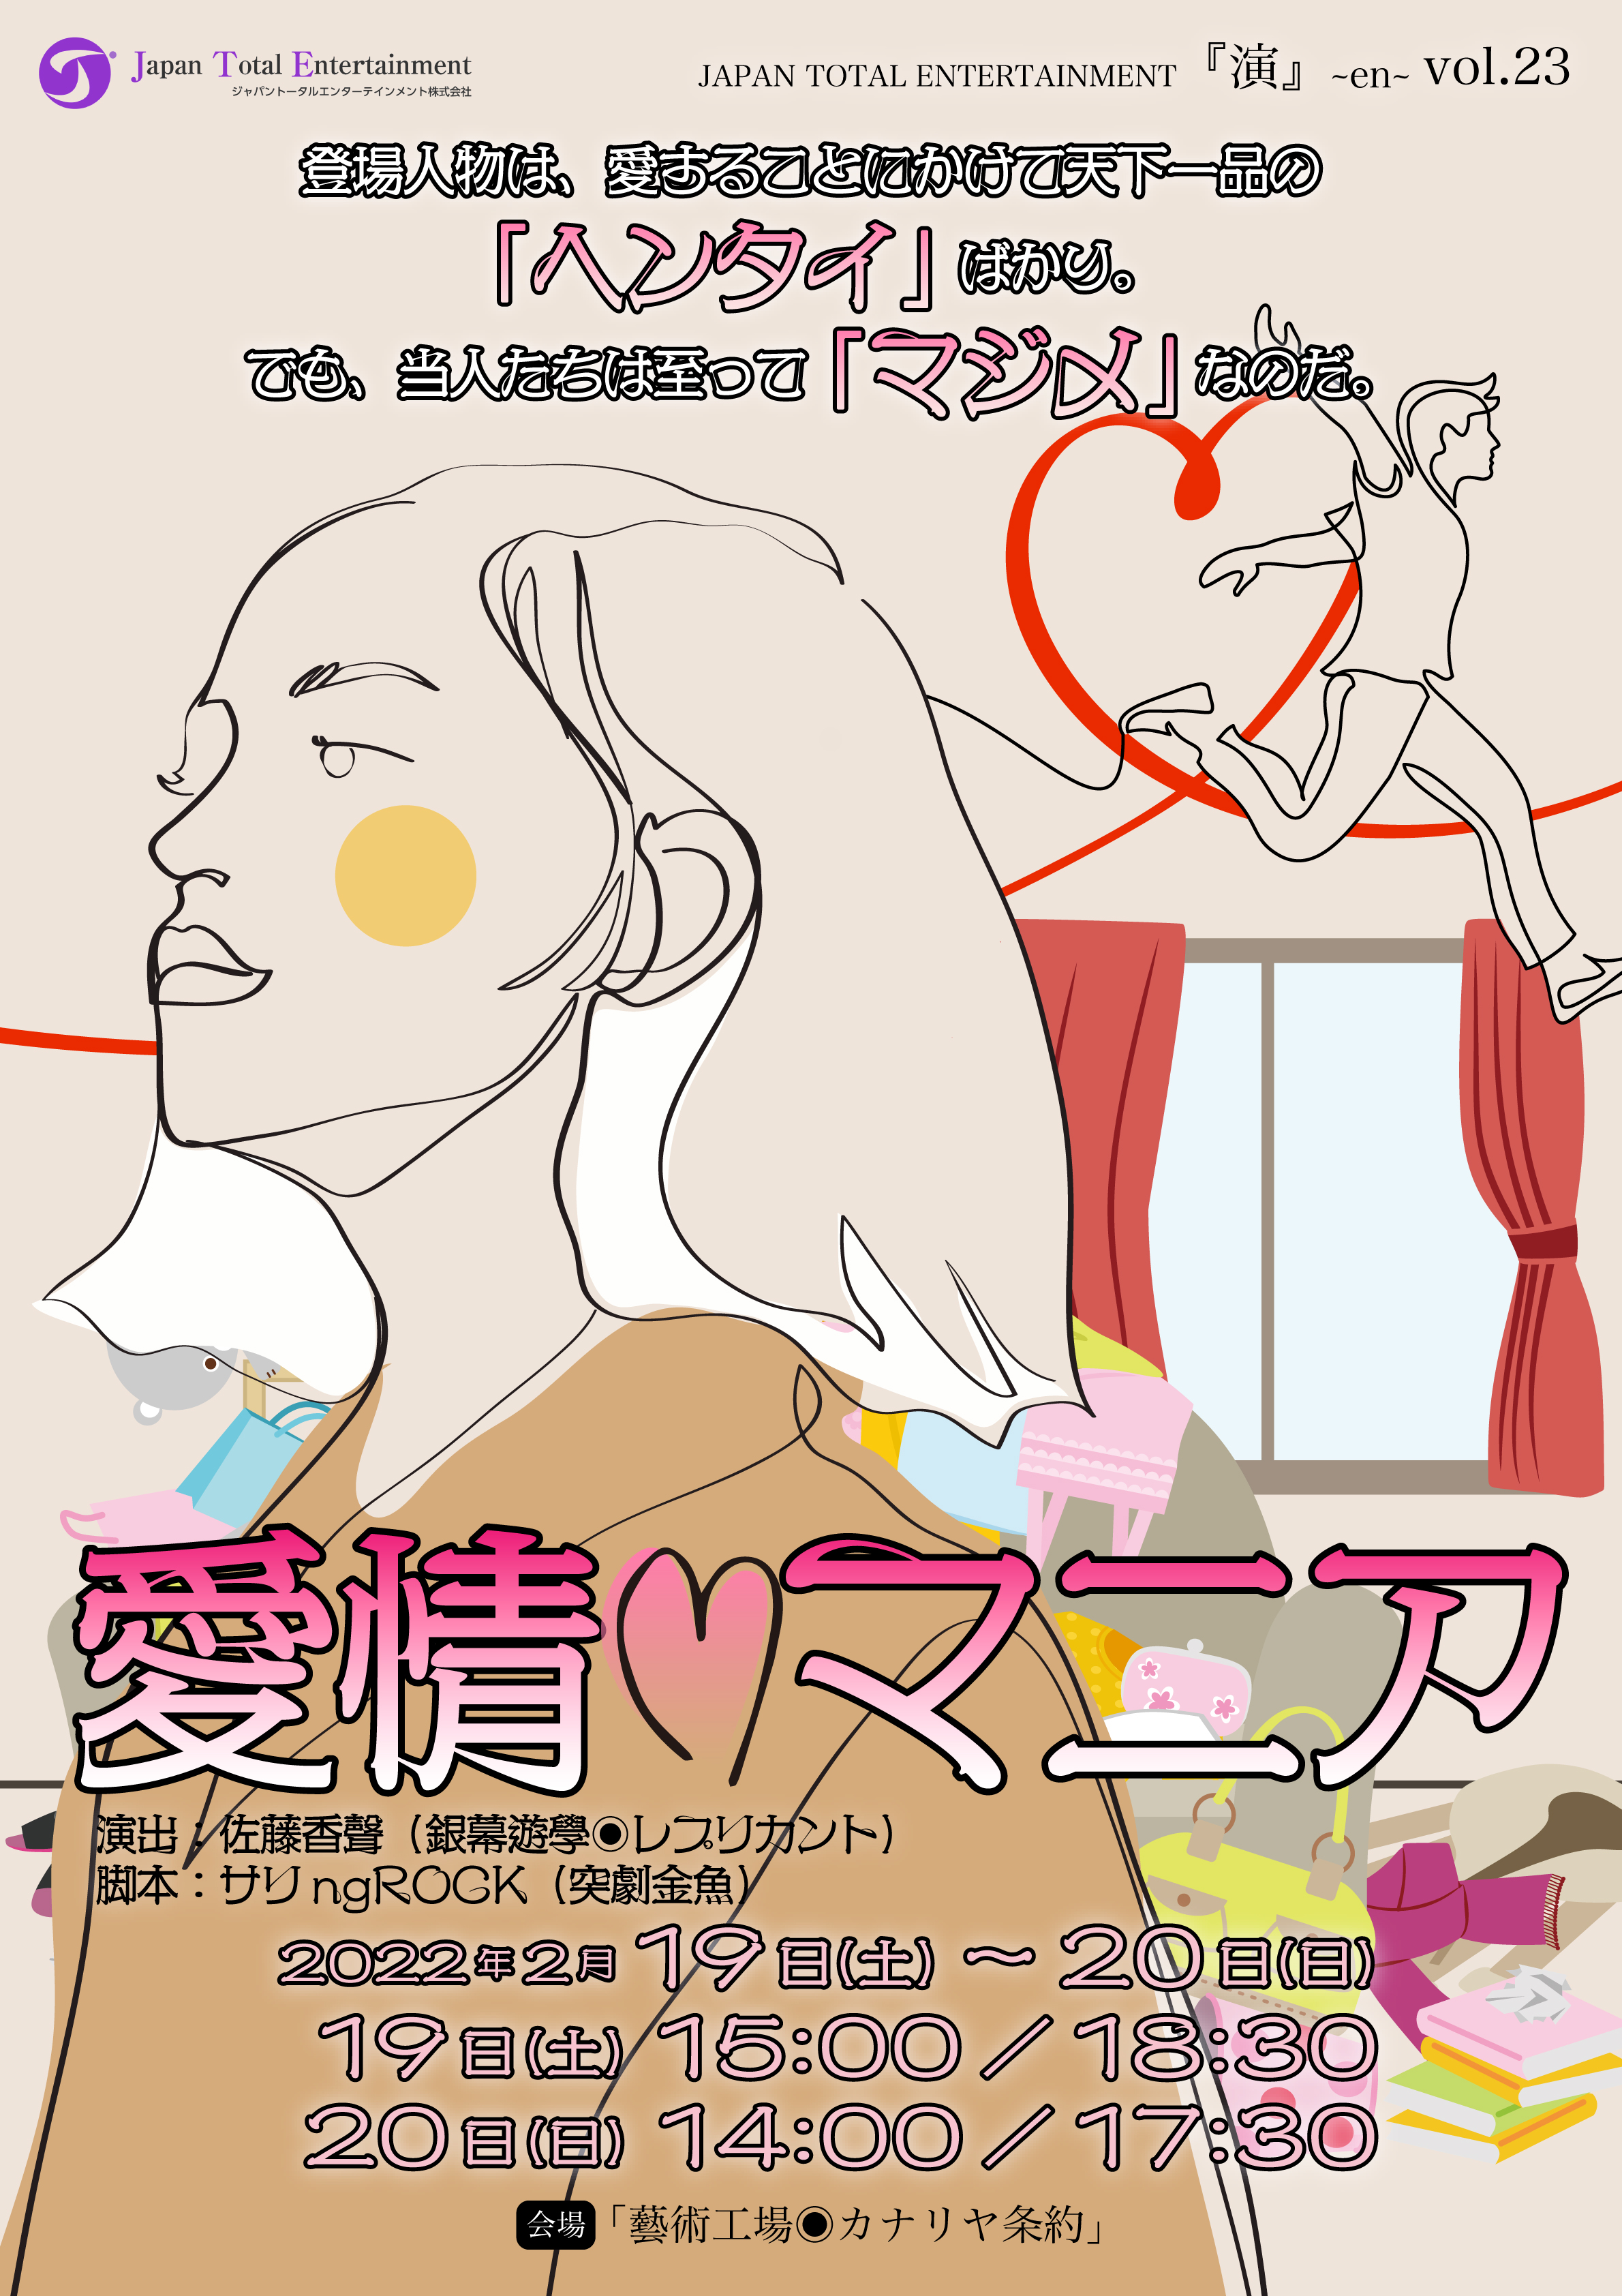 『演』~en~vol.23「愛情マニア」のチケット予約が2022年1月15日（土）からスタートしました！